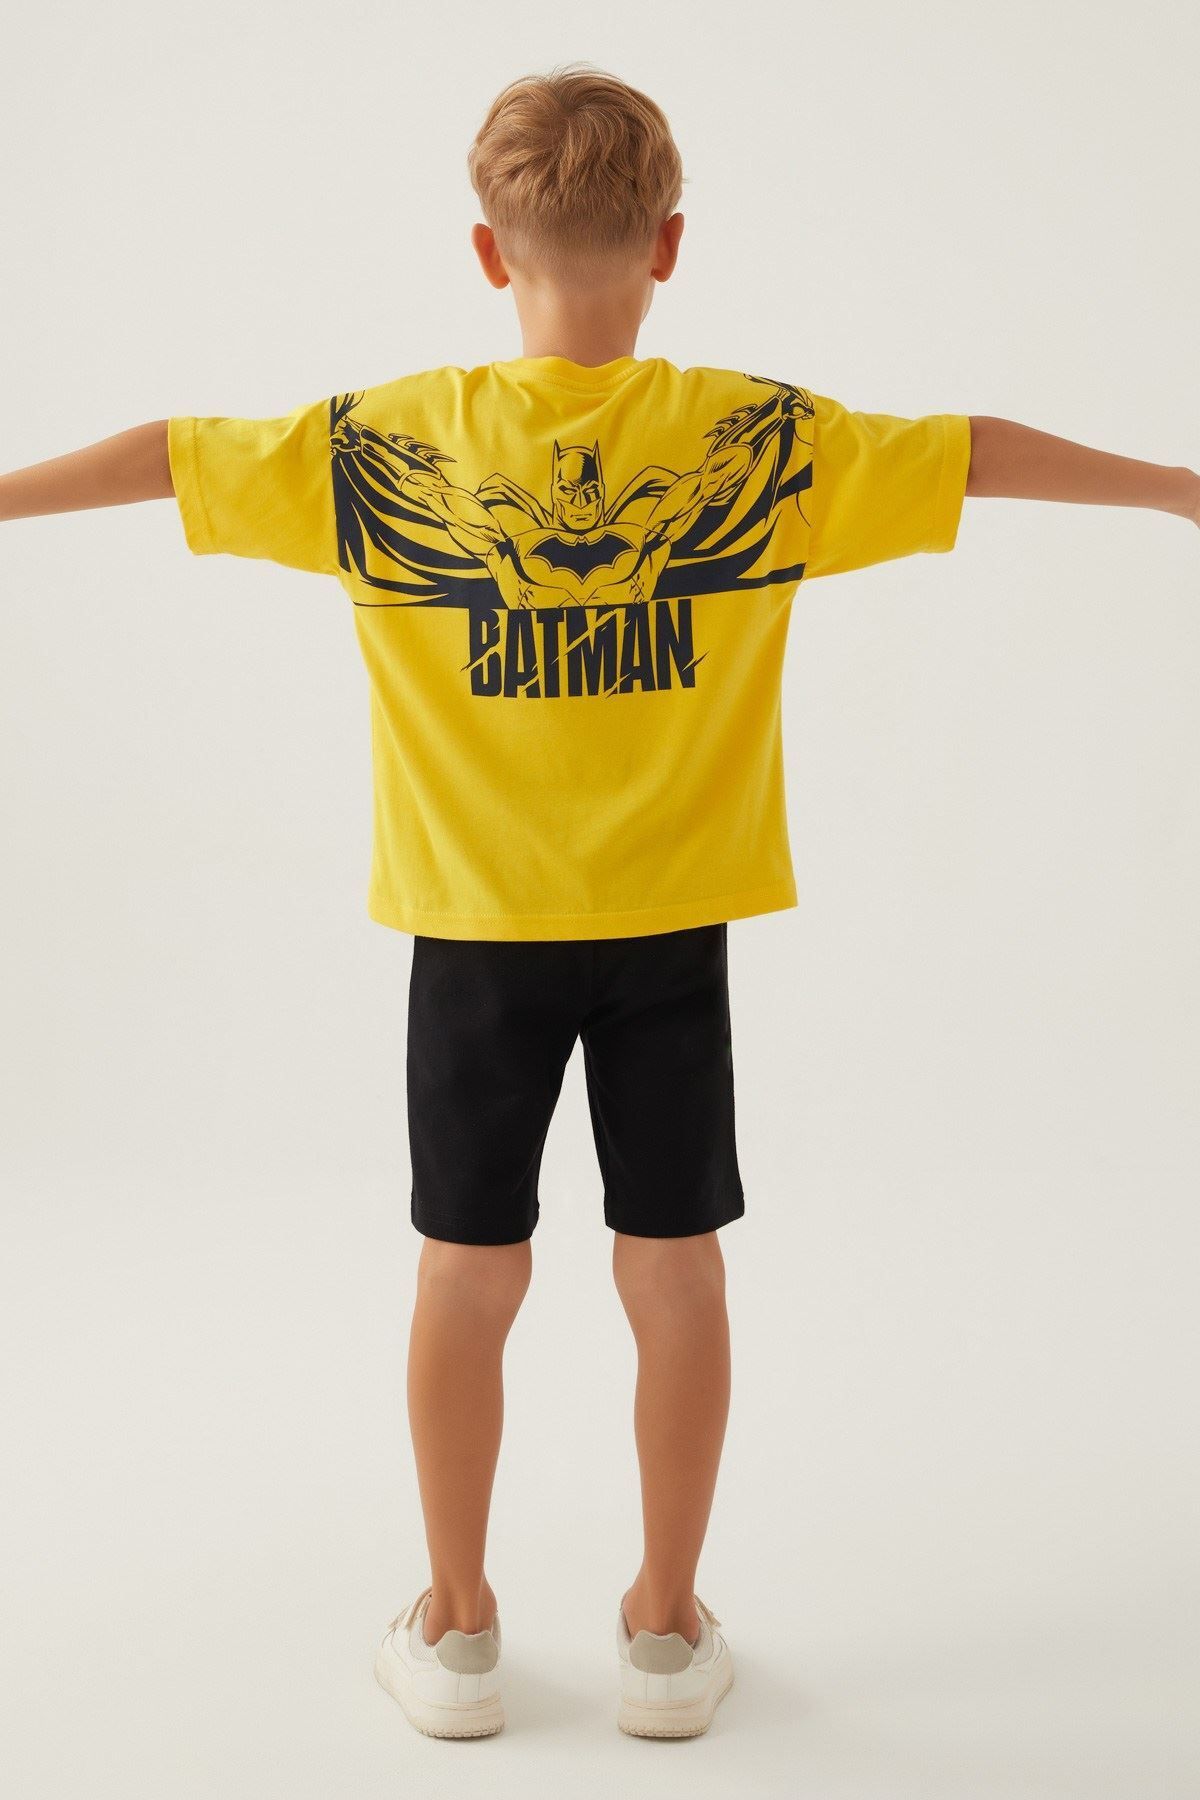 Batman 3-9 Yaş Lisanslı Batman Erkek Çocuk Takım -Sarı